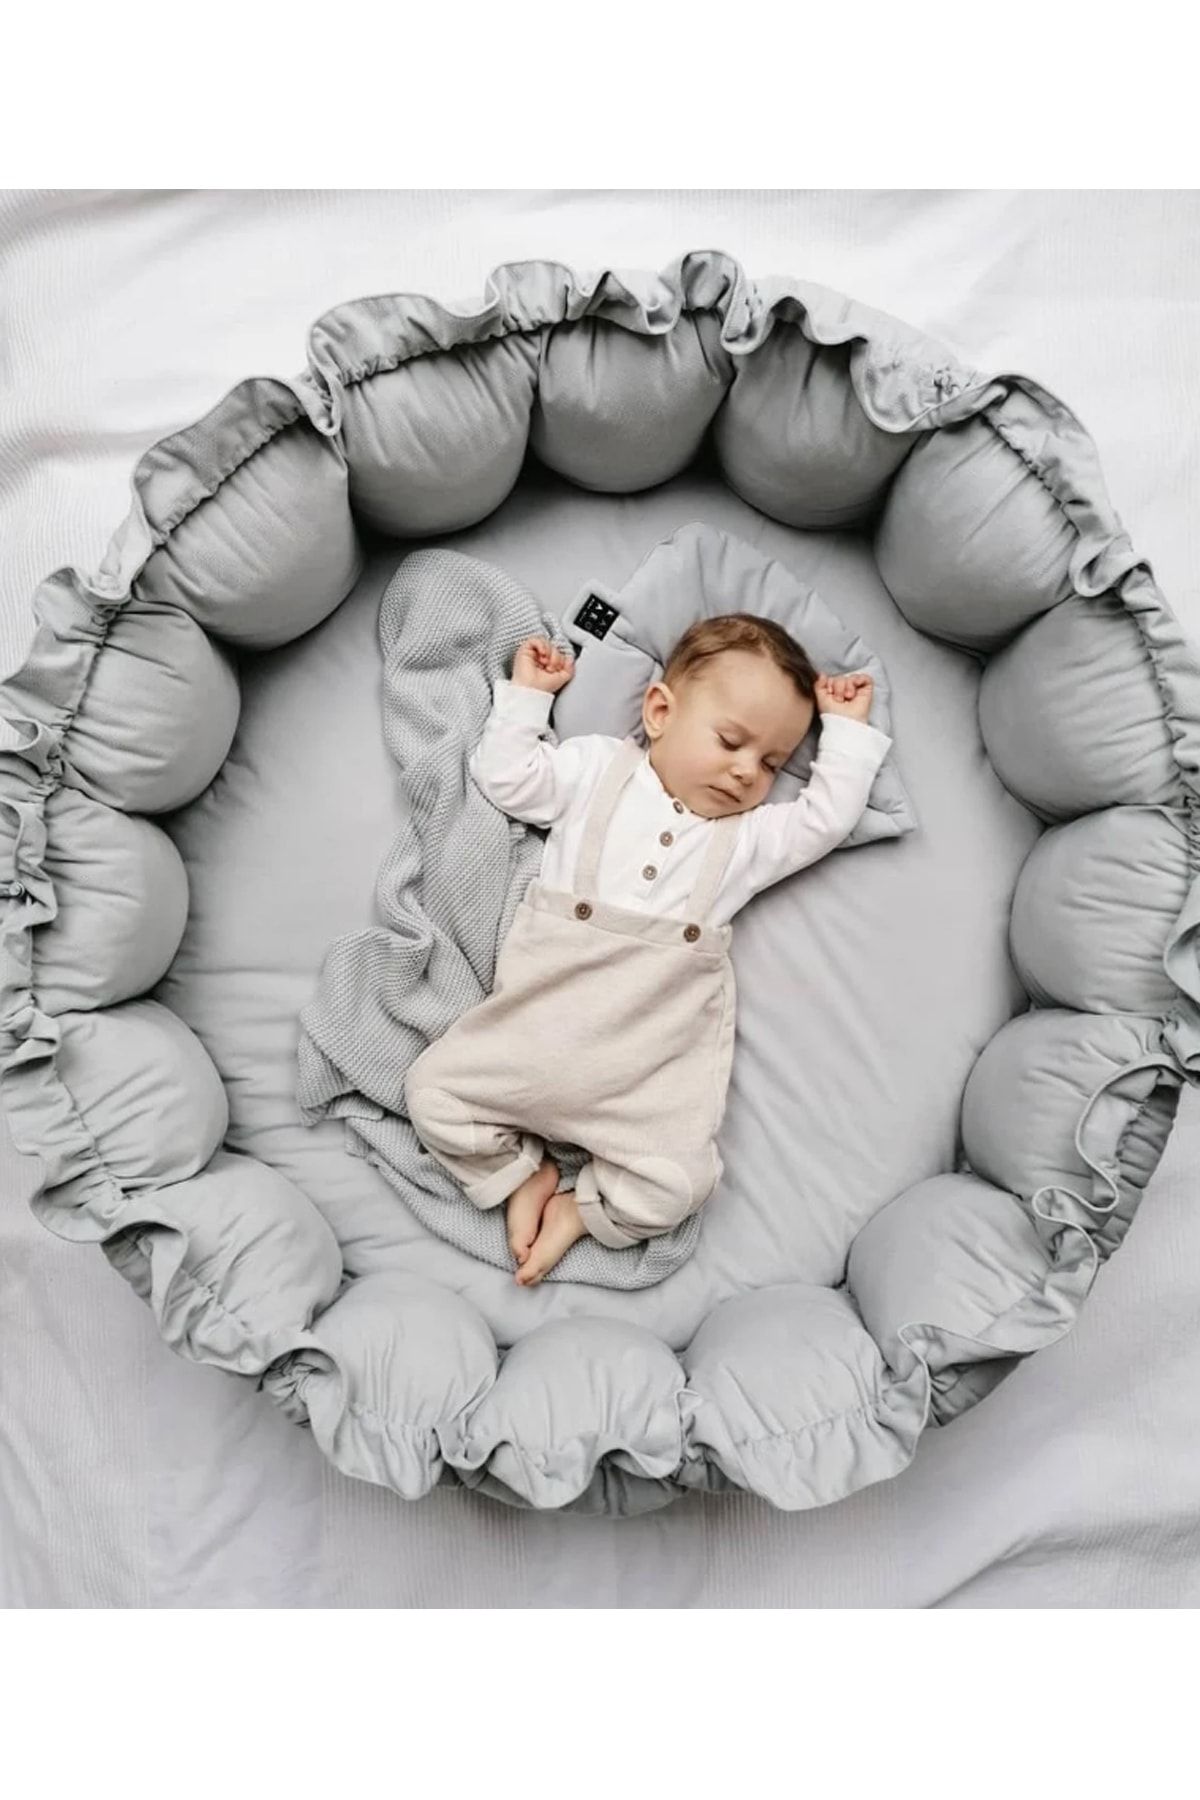 Jaju Baby Nest Gri Açılır - Kapanır Oyun Minderi Jaju-babynest Bebek Yatağı Play Nest Bebek Yuvası